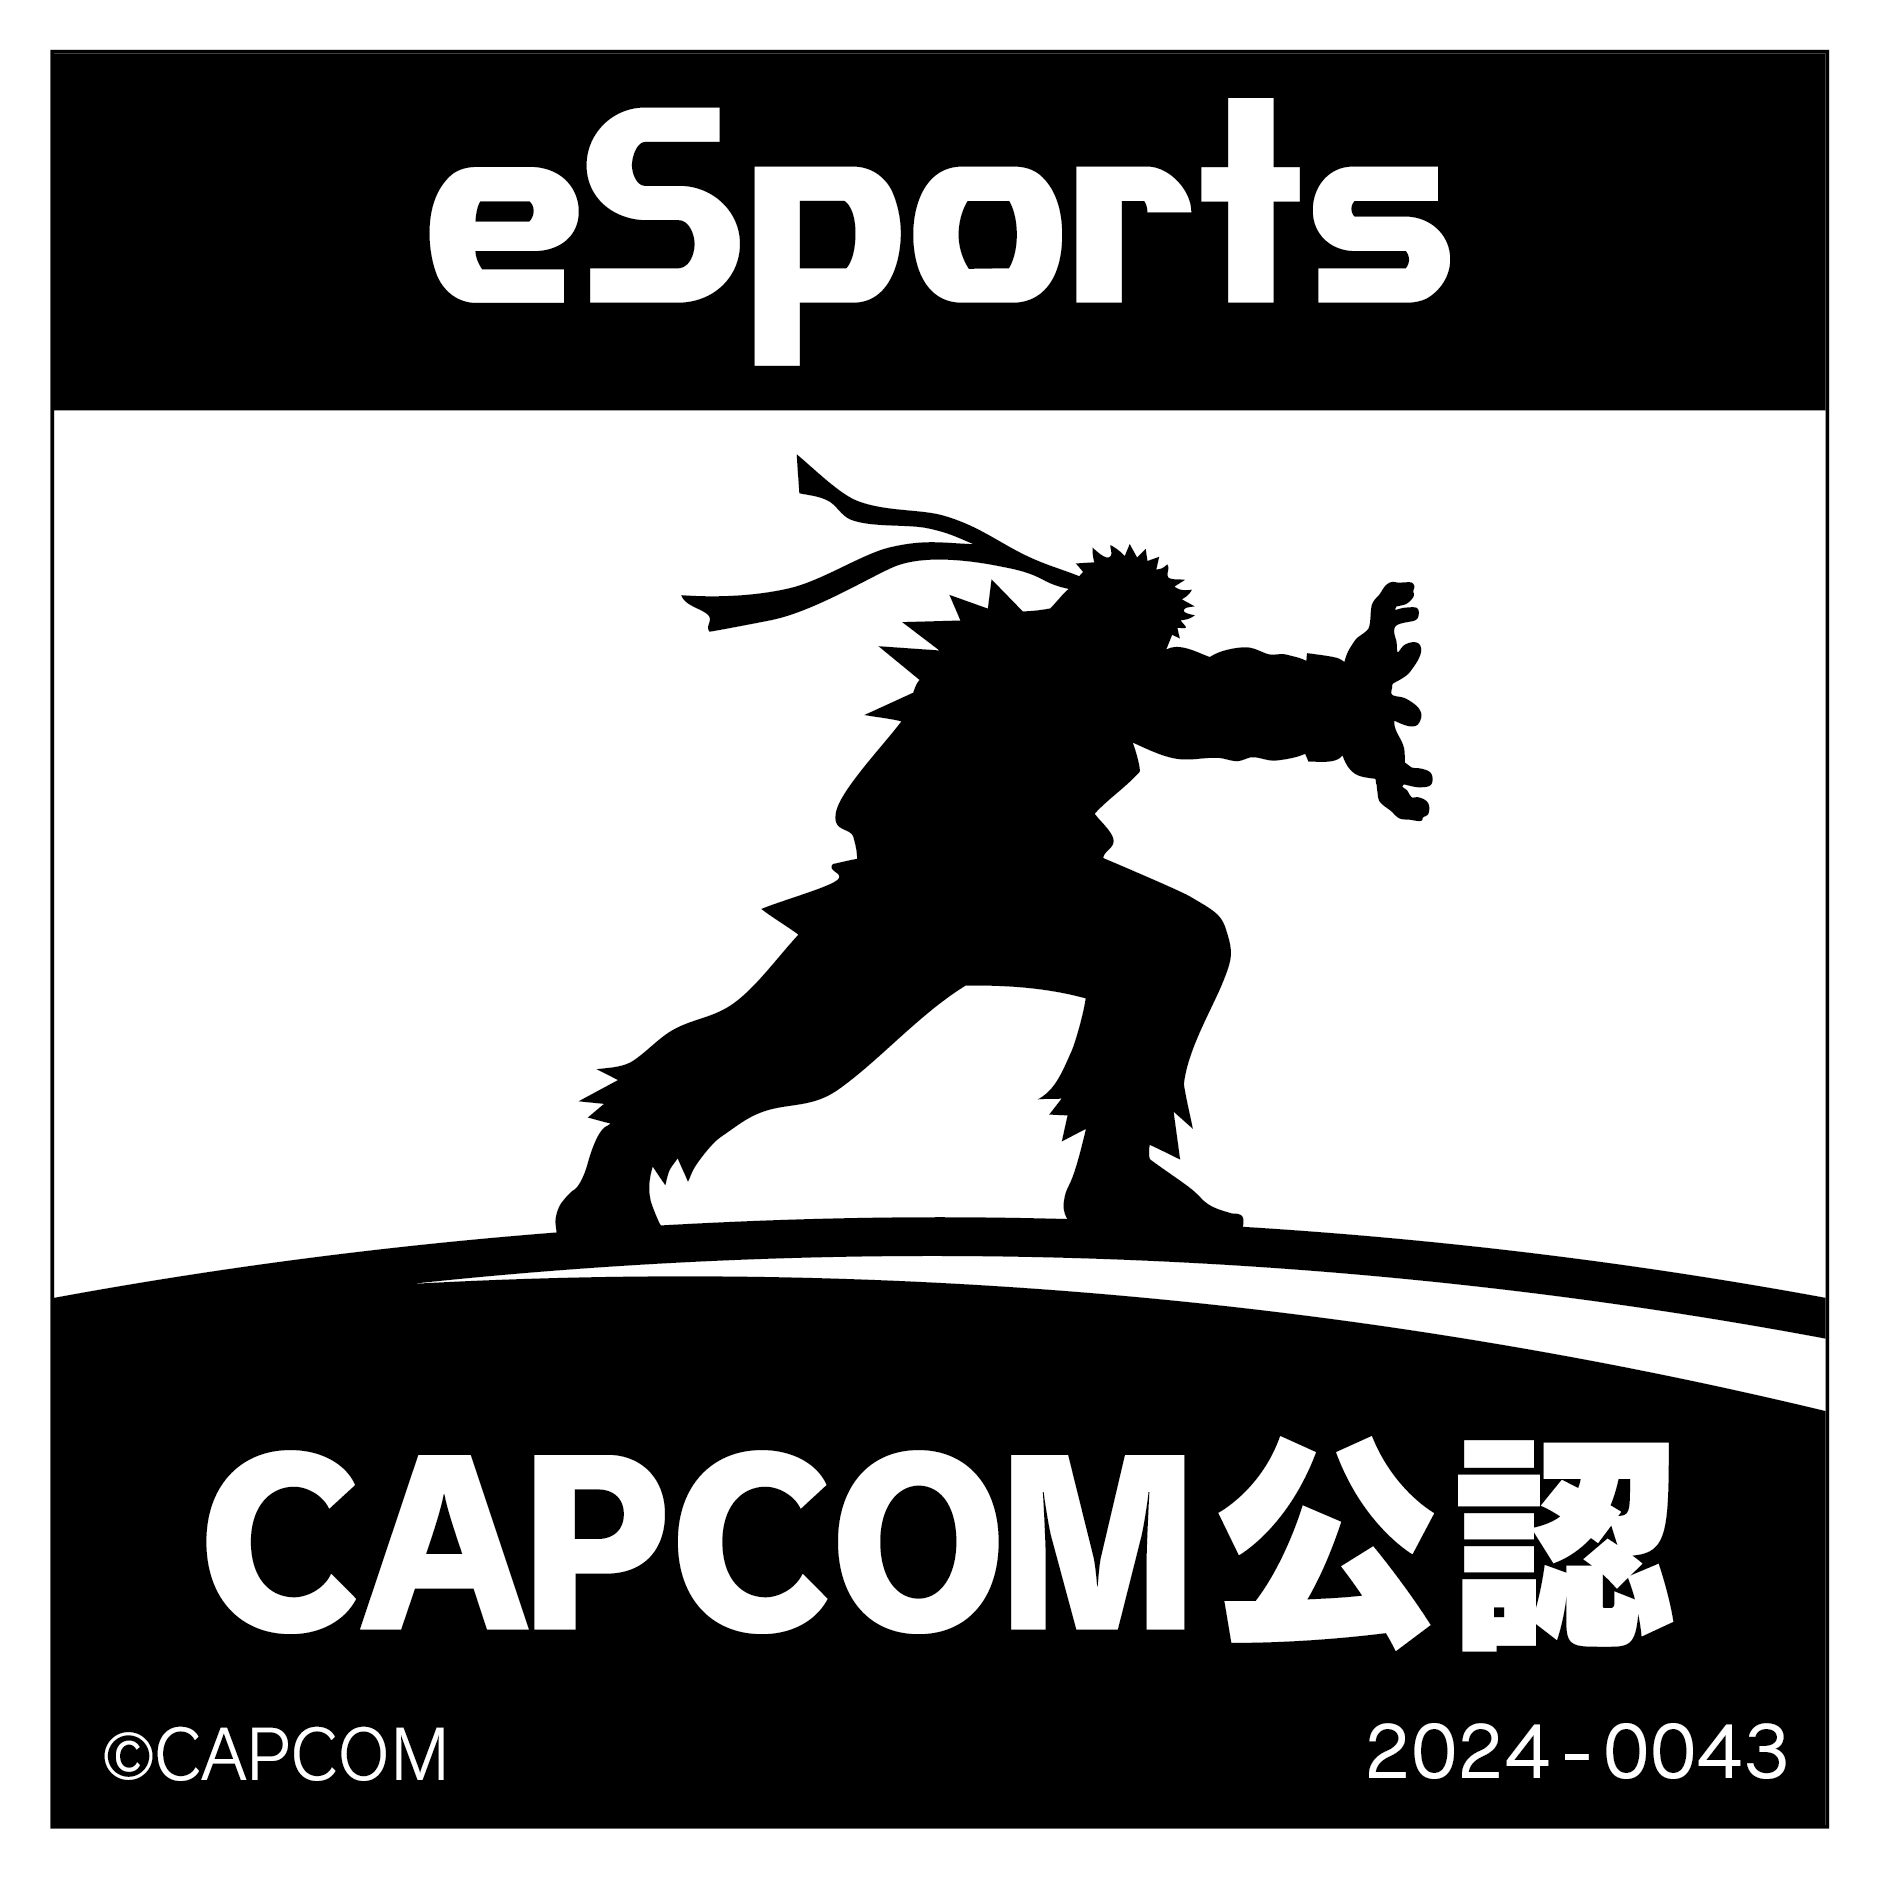 eSports CAPCOM公認 2024-0043